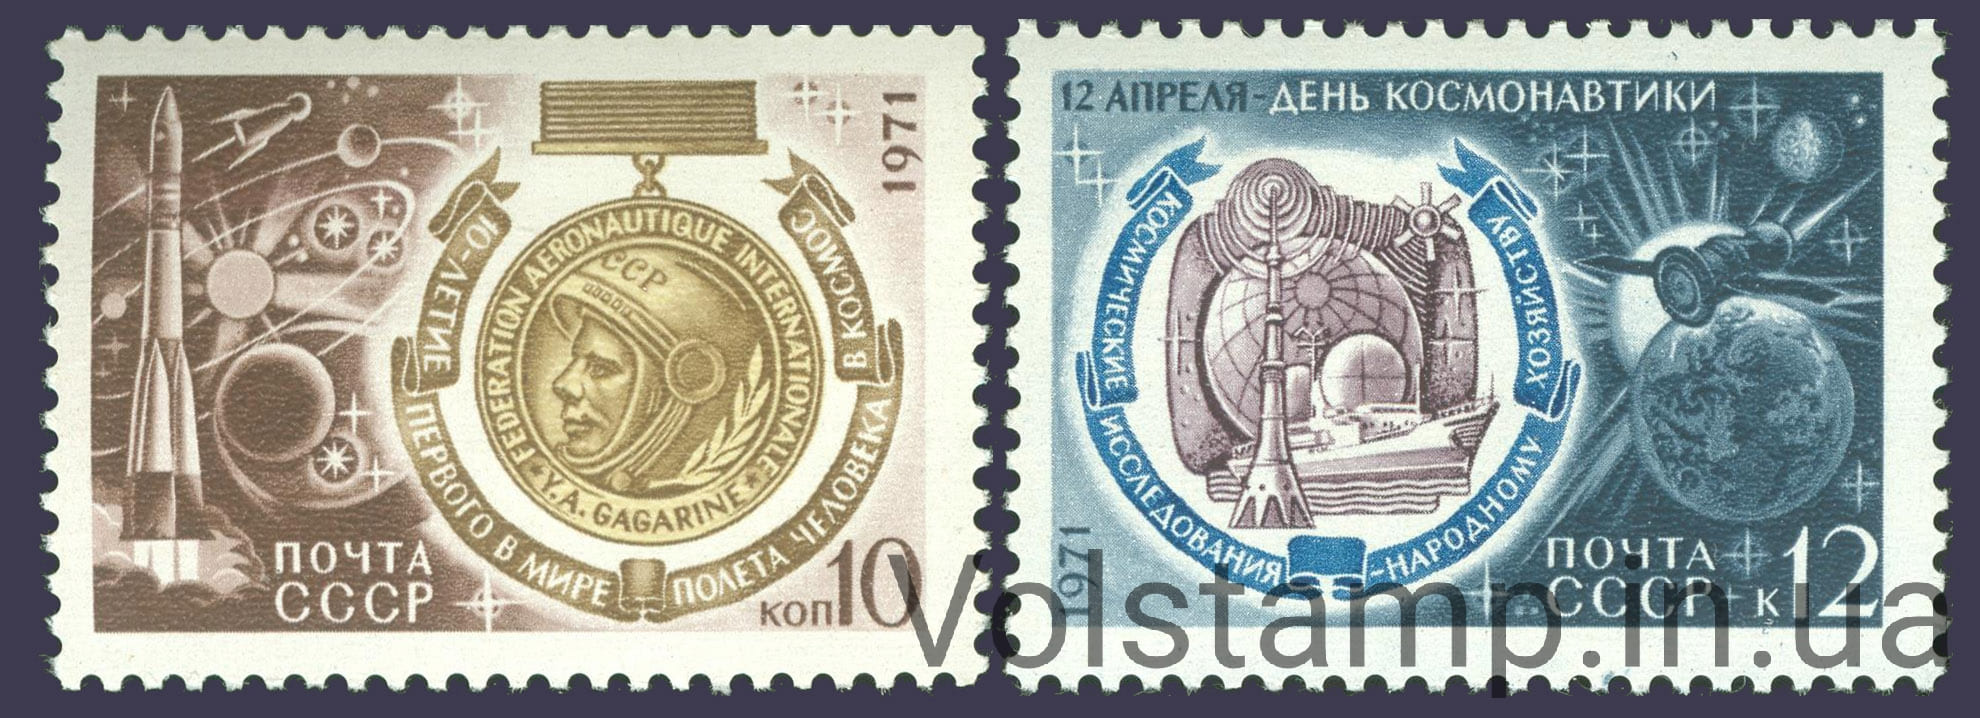 1971 серия марок День космонавтики №3916-3917